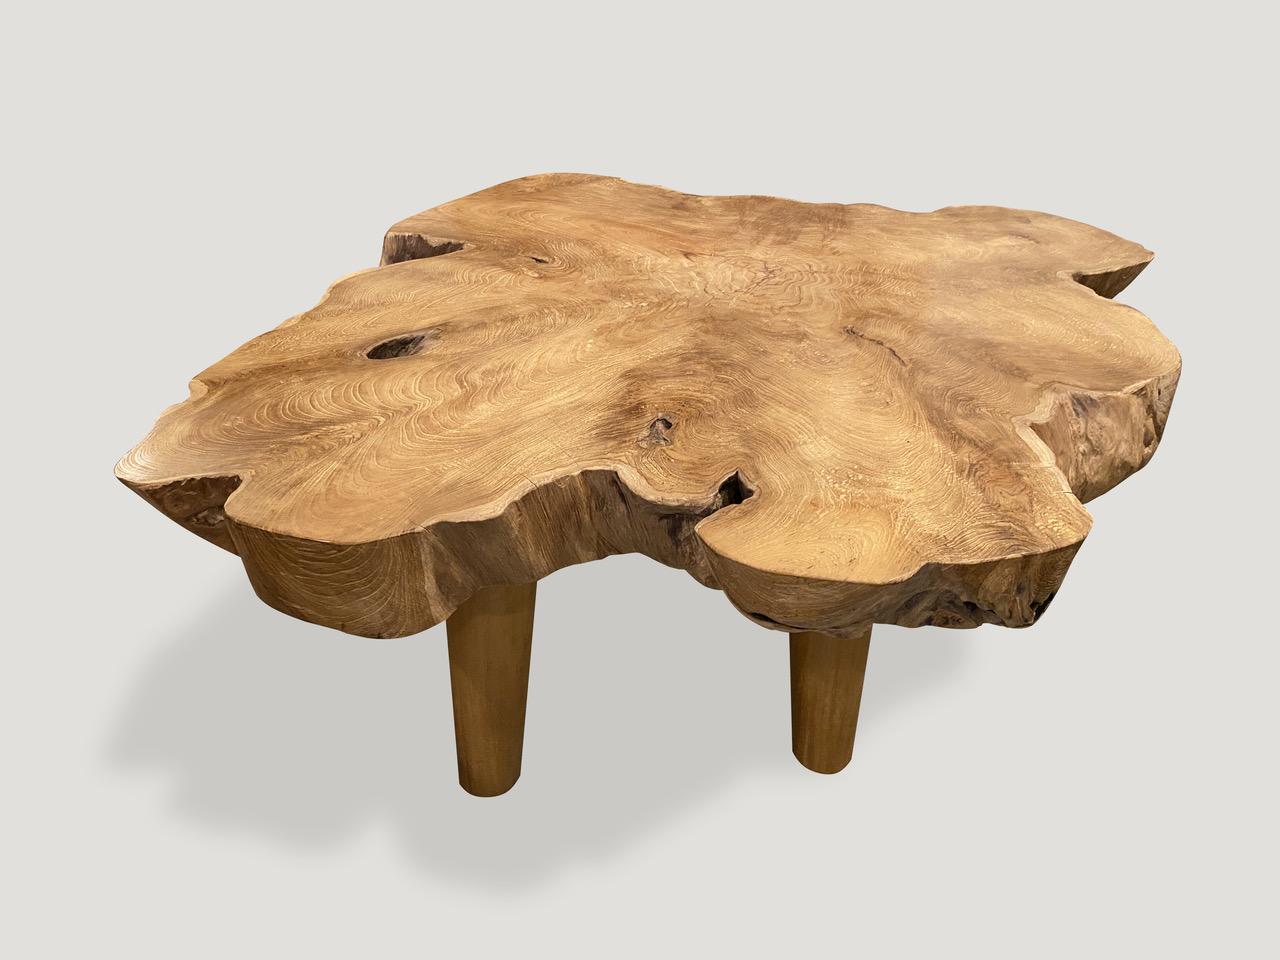 Impressionnante table basse en teck de trois pouces à bord vif, posée sur des pieds minimalistes de style mi-siècle. Fini avec une huile naturelle révélant le magnifique grain du bois. Nous avons une collection. Le prix et les images correspondent à